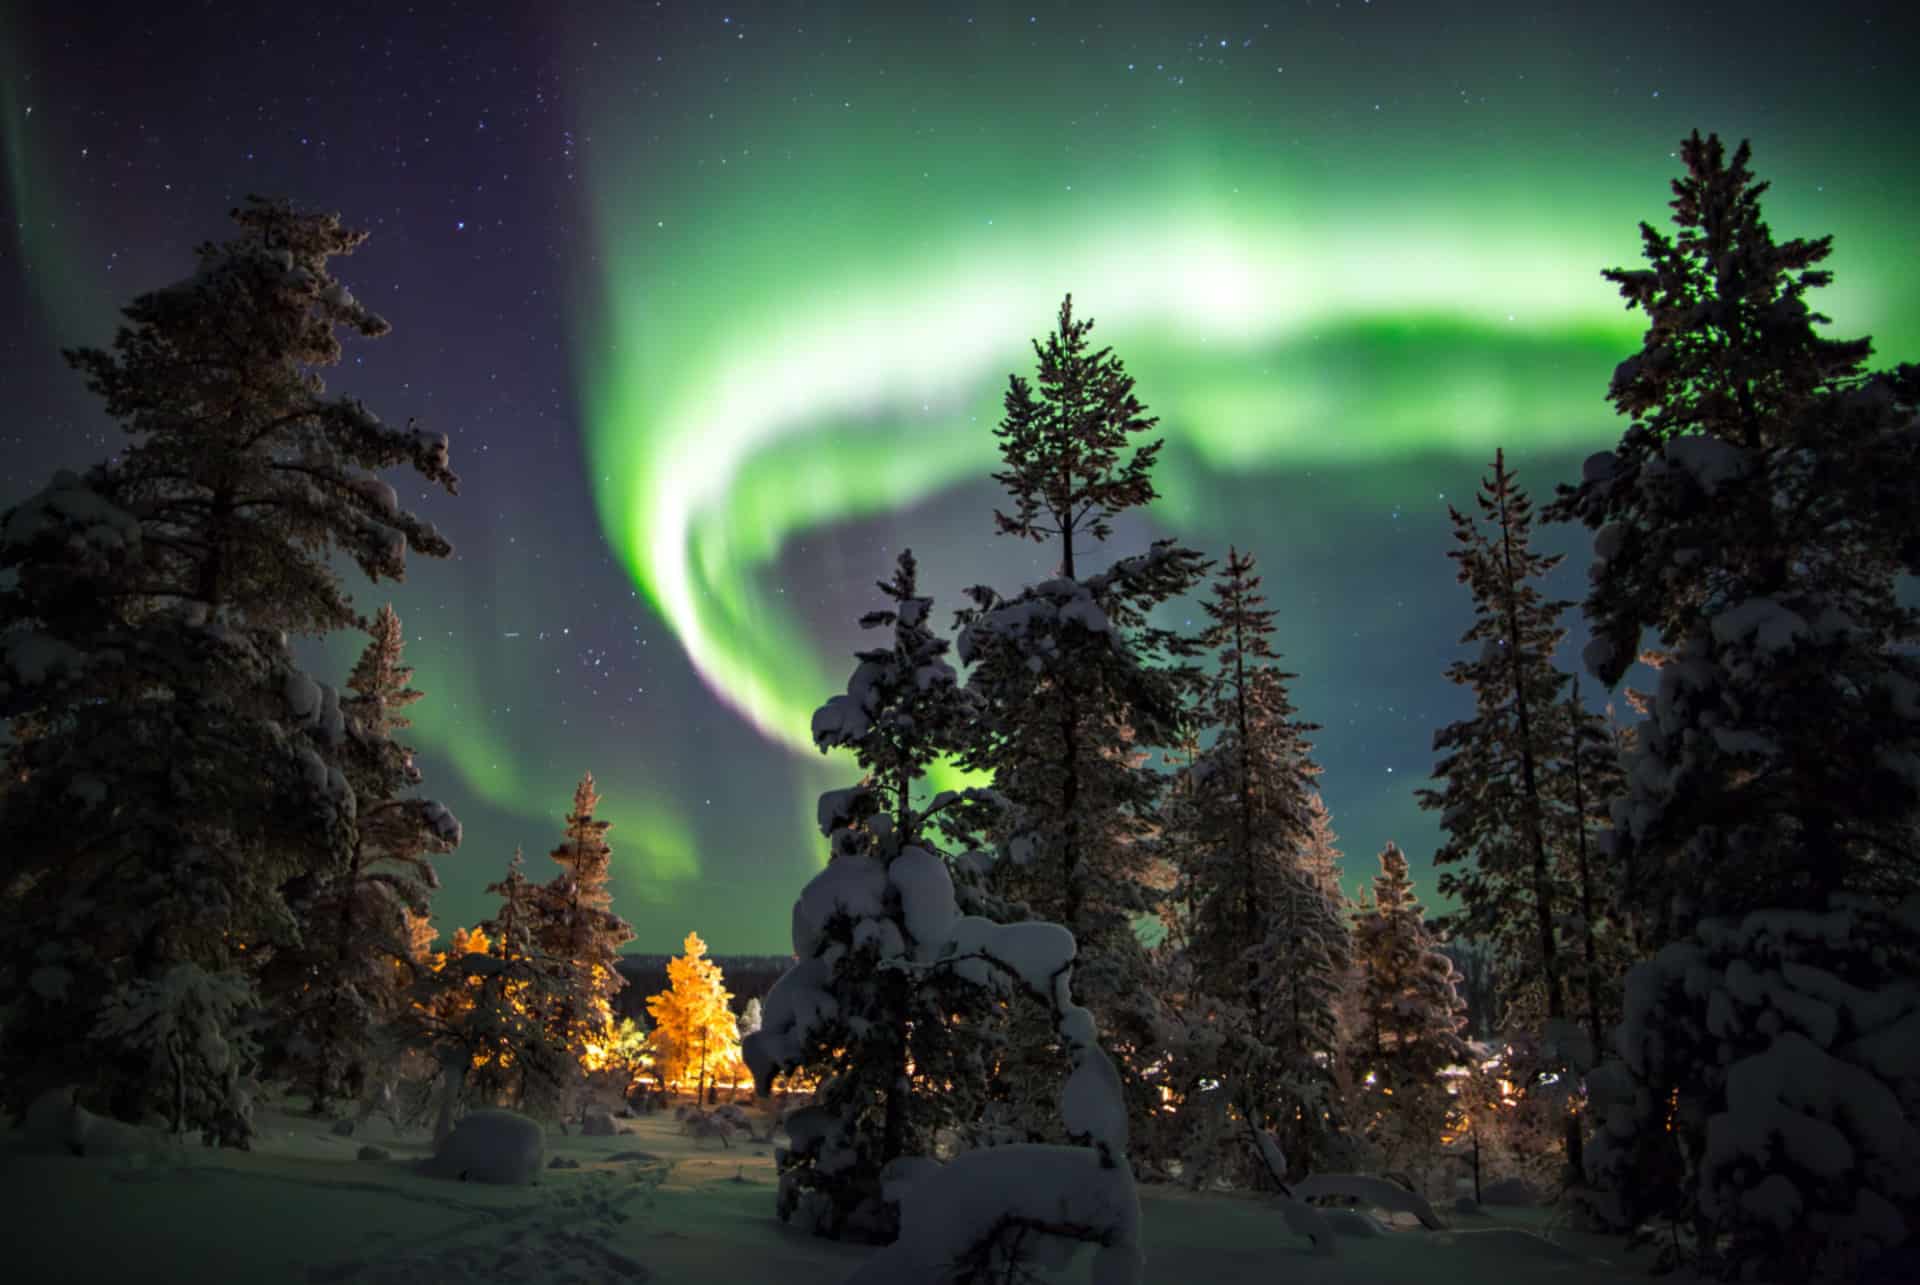 aurores boreales en finlande